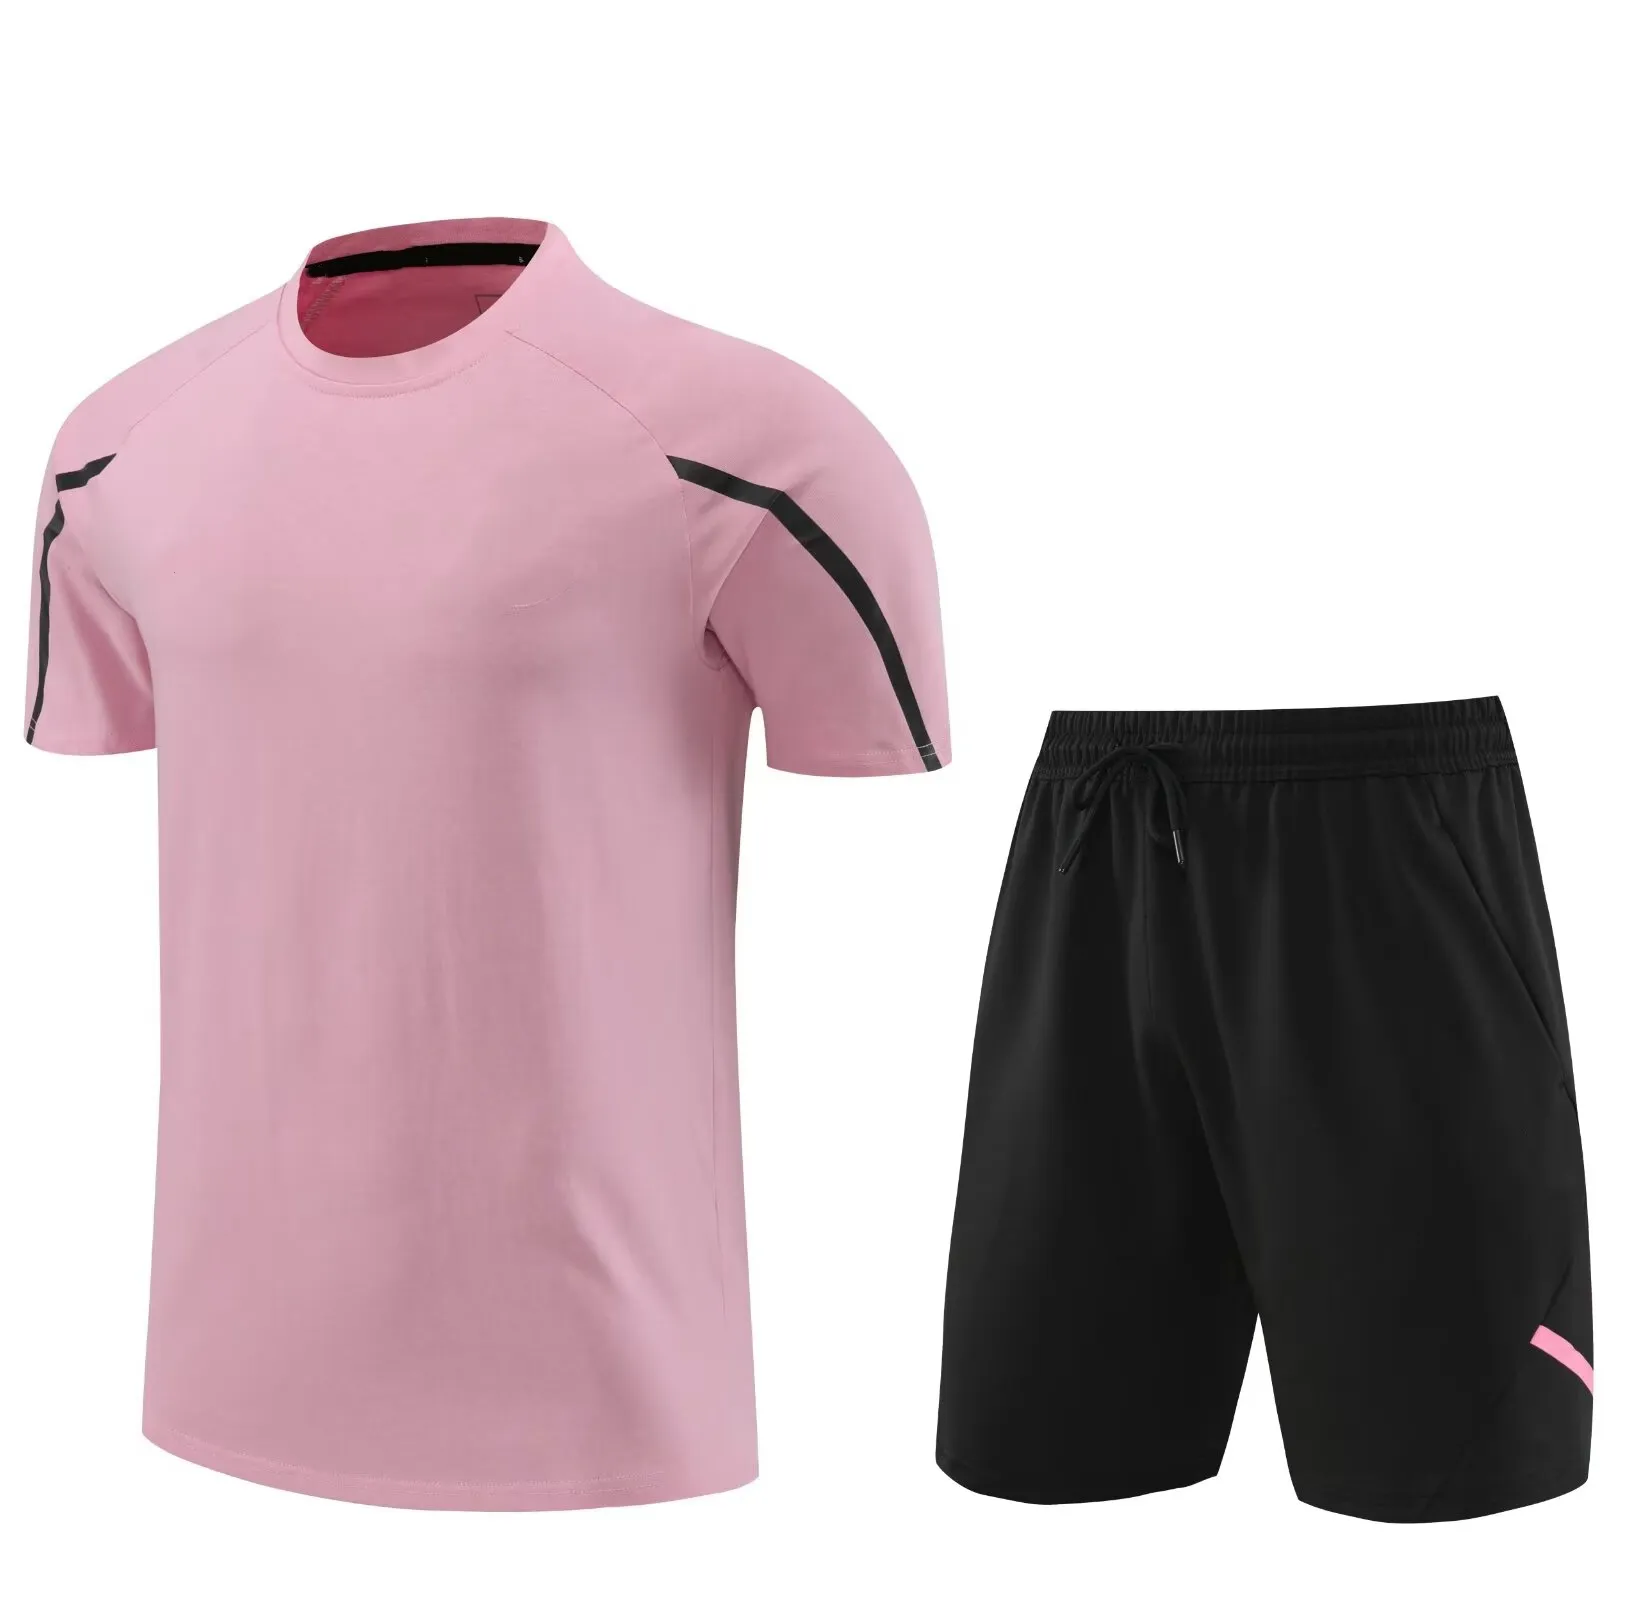 All'ingrosso top quality shorts manica corta set completo cotone camisa de messi del inter de miami rosa maglia da allenamento calcio